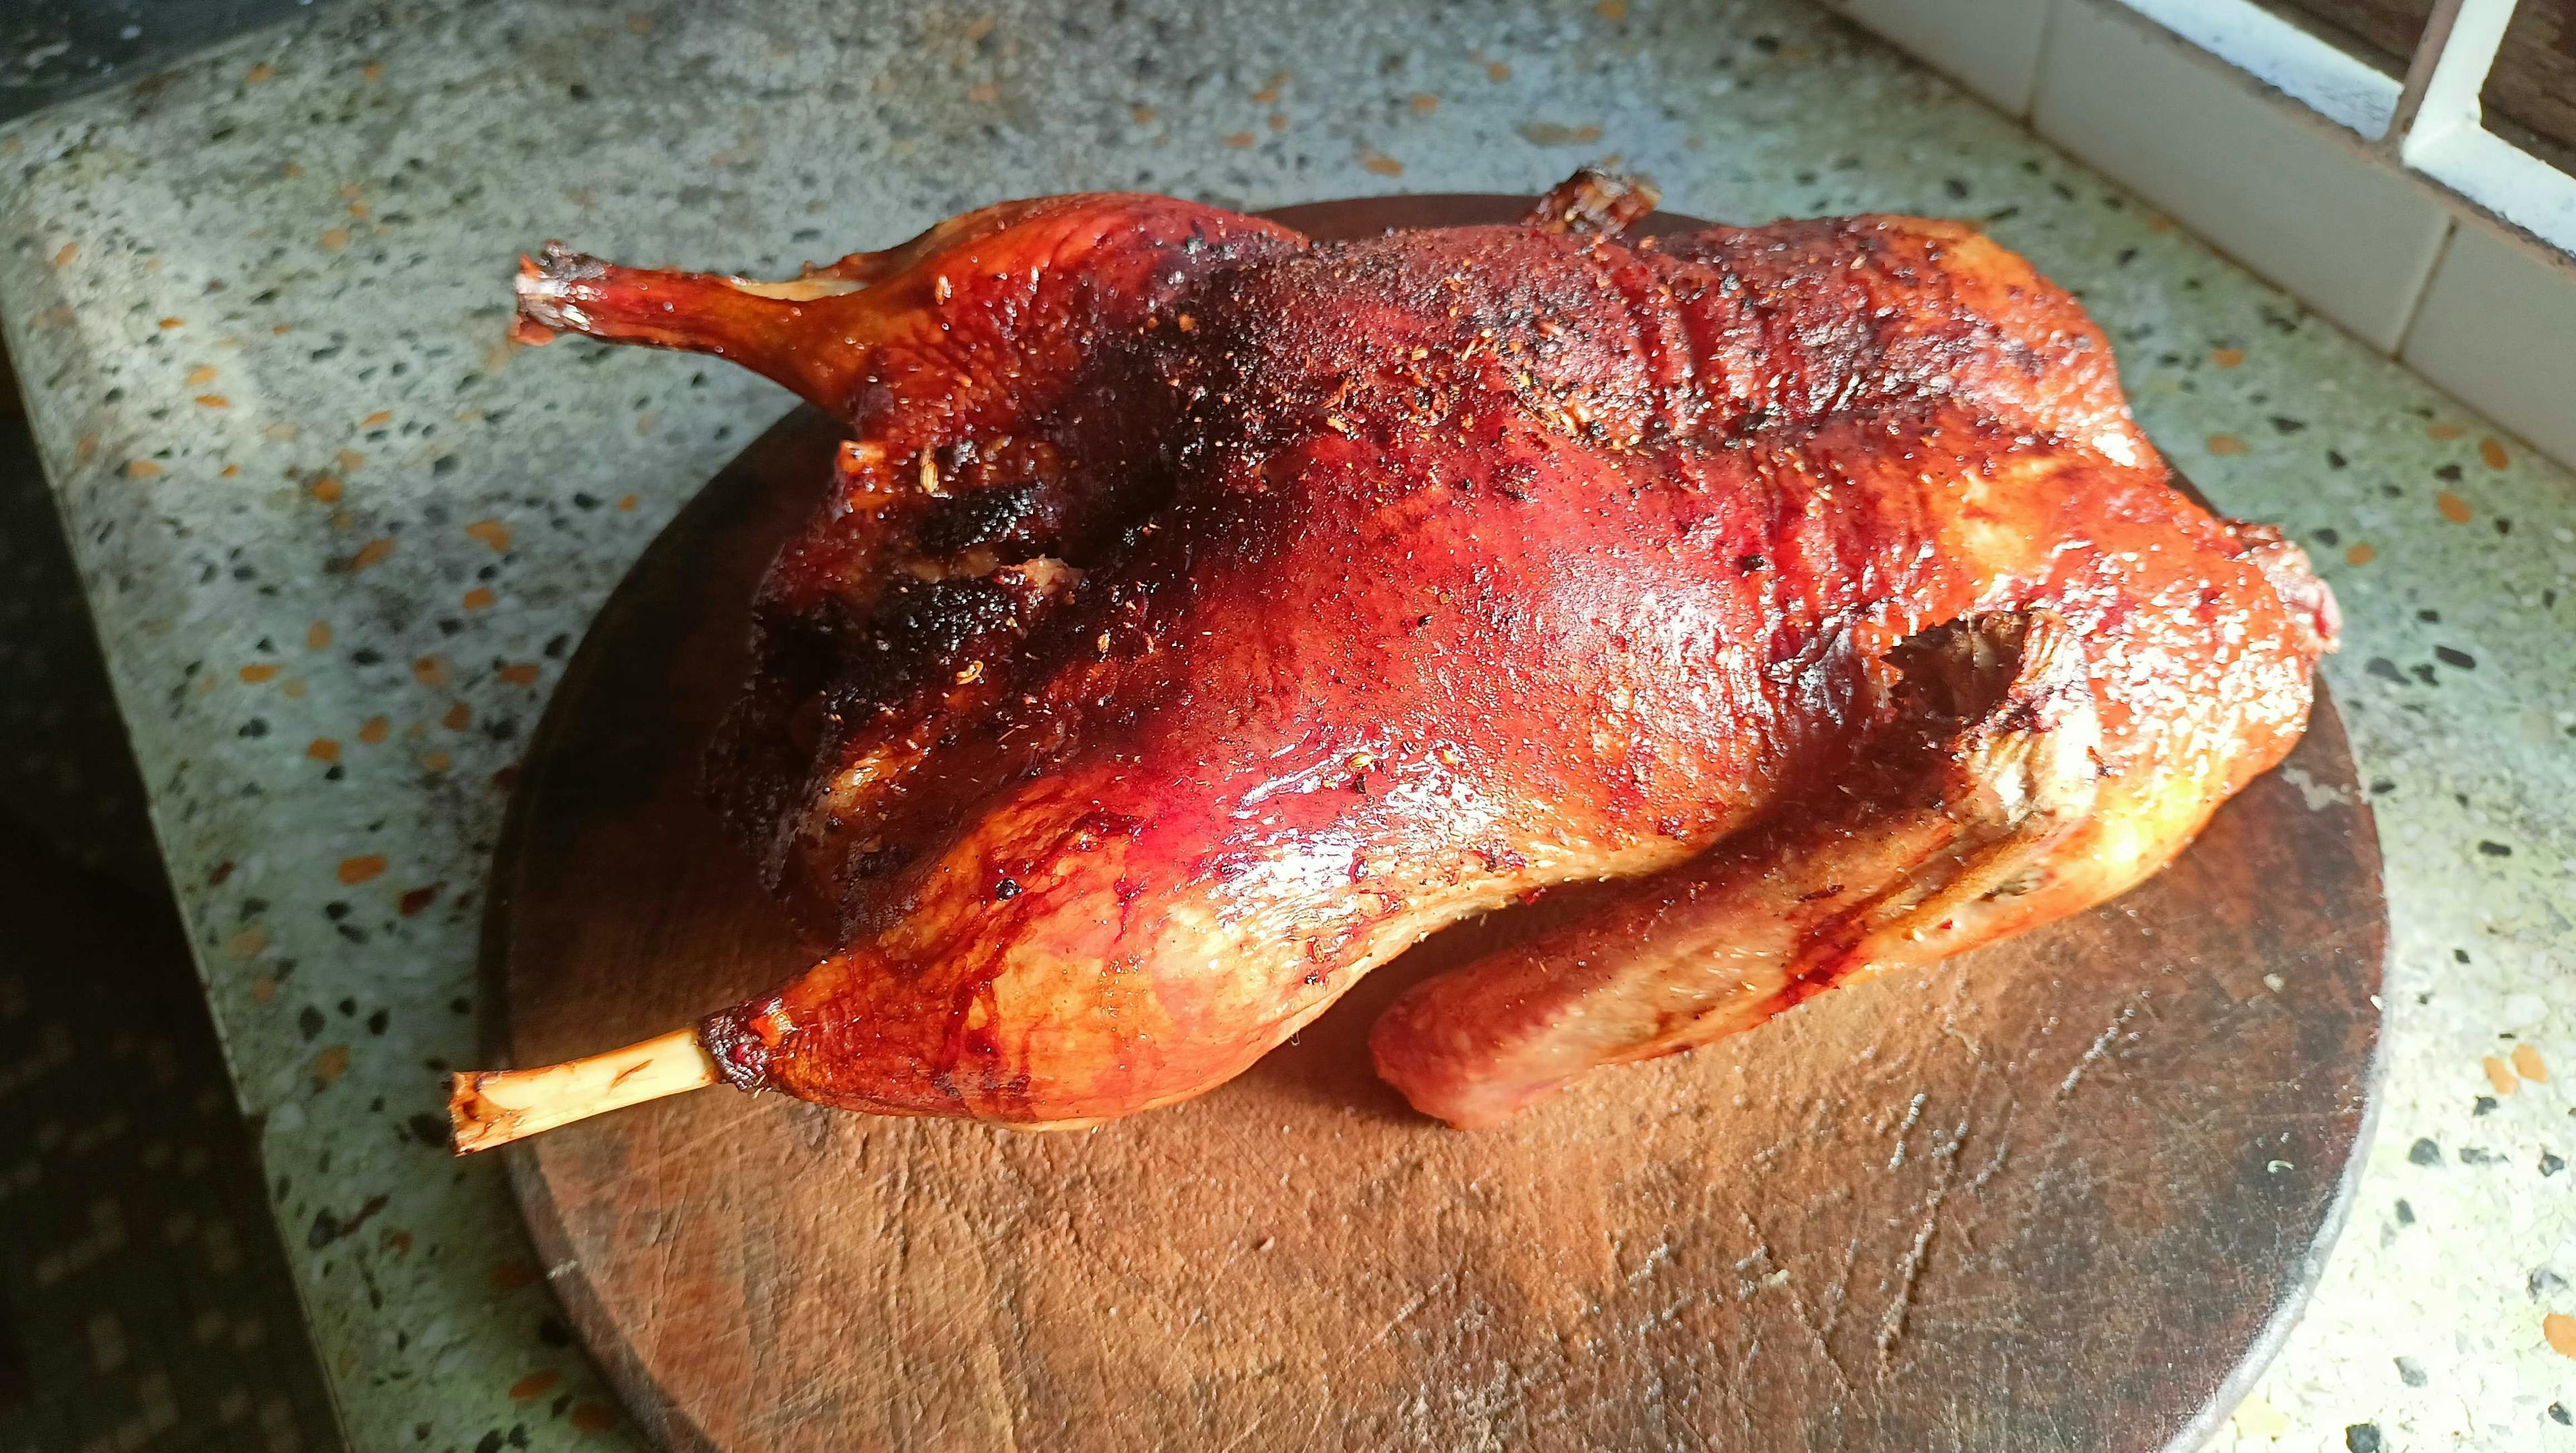 Roast Duck - In a halogen oven